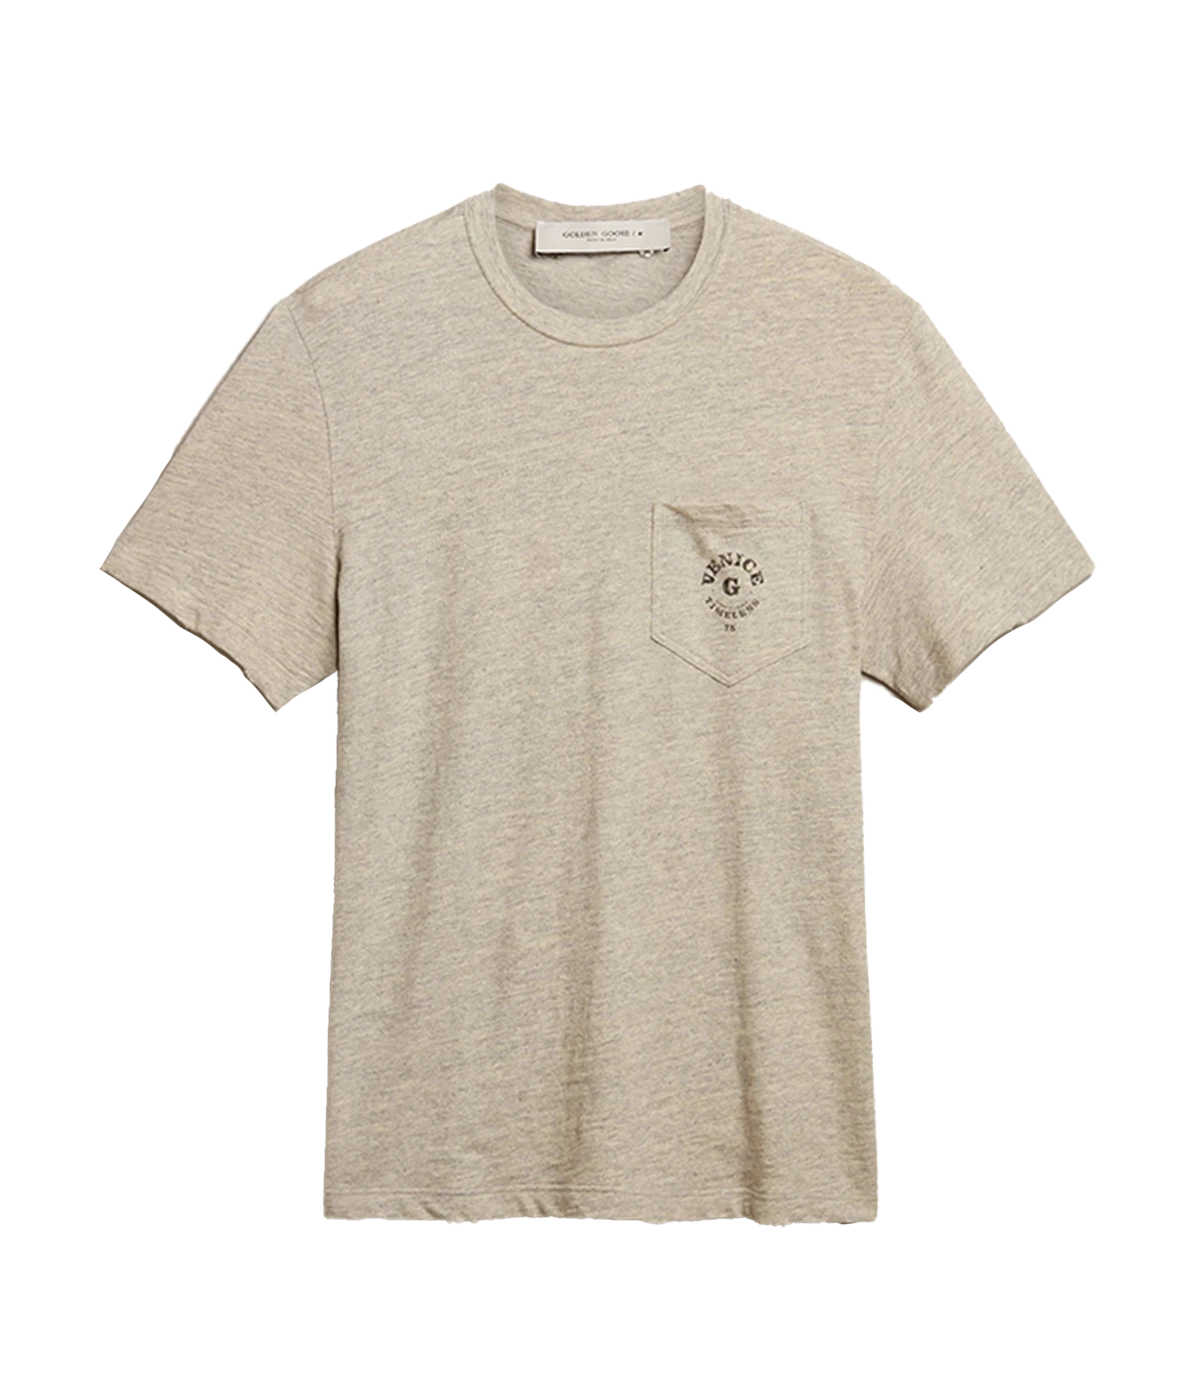 Journey T-Shirt in Melange Grey & Black